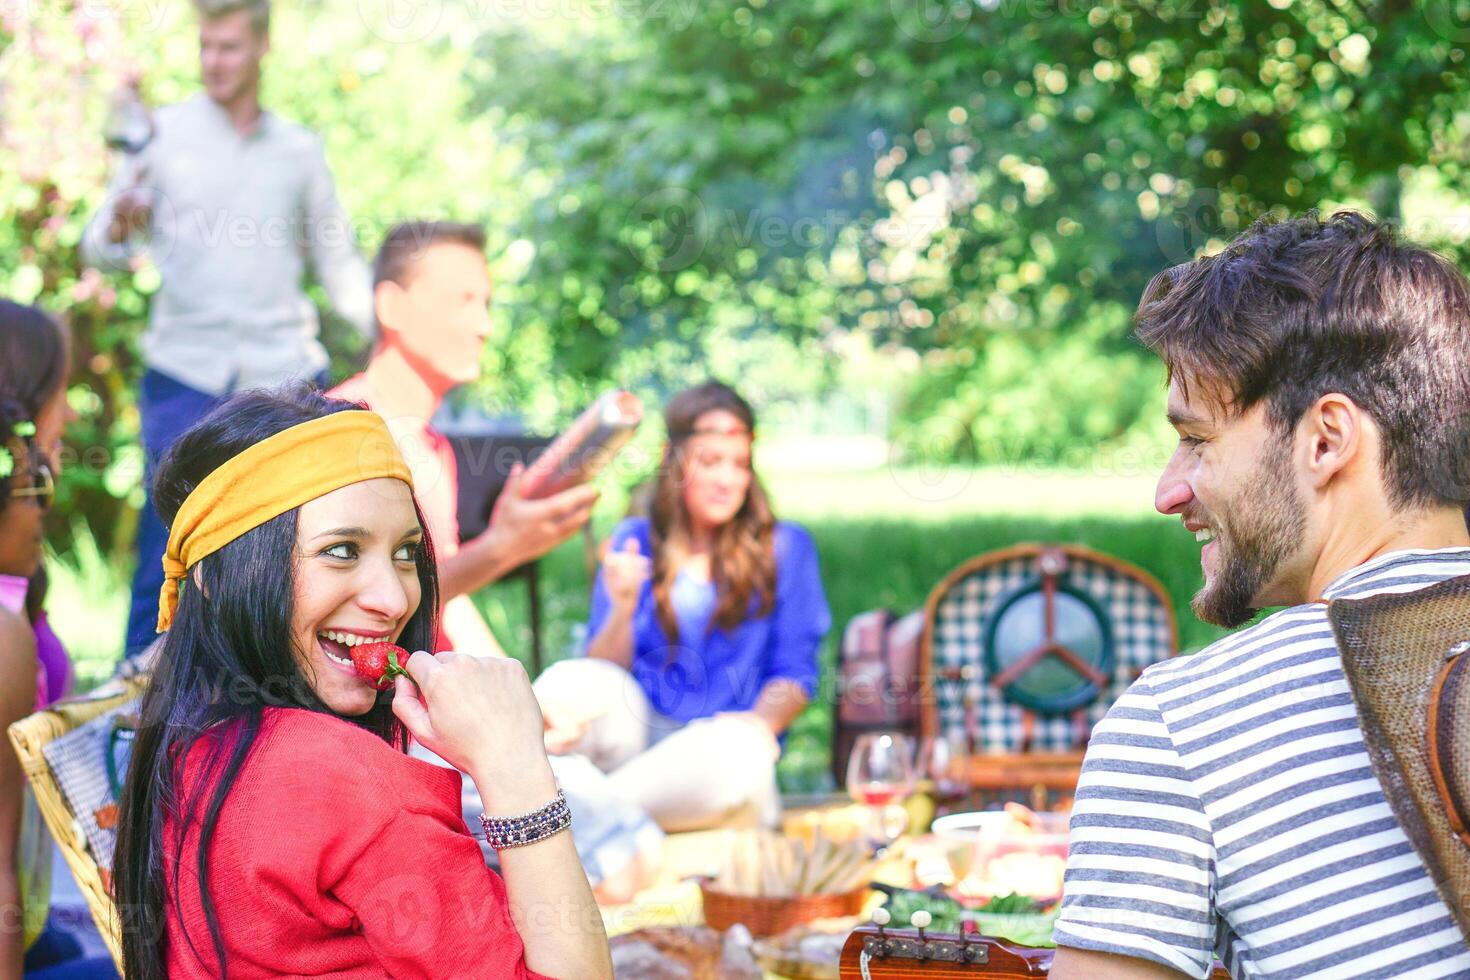 Gruppe von glücklich freunde Herstellung ein Picknick Grill im ein Park draussen - - jung Menschen haben ein Grill Party genießen Essen und Getränke zusammen - - Freundschaft, Lebensstil, Jugend Konzept - - Fokus auf Frau Gesicht foto